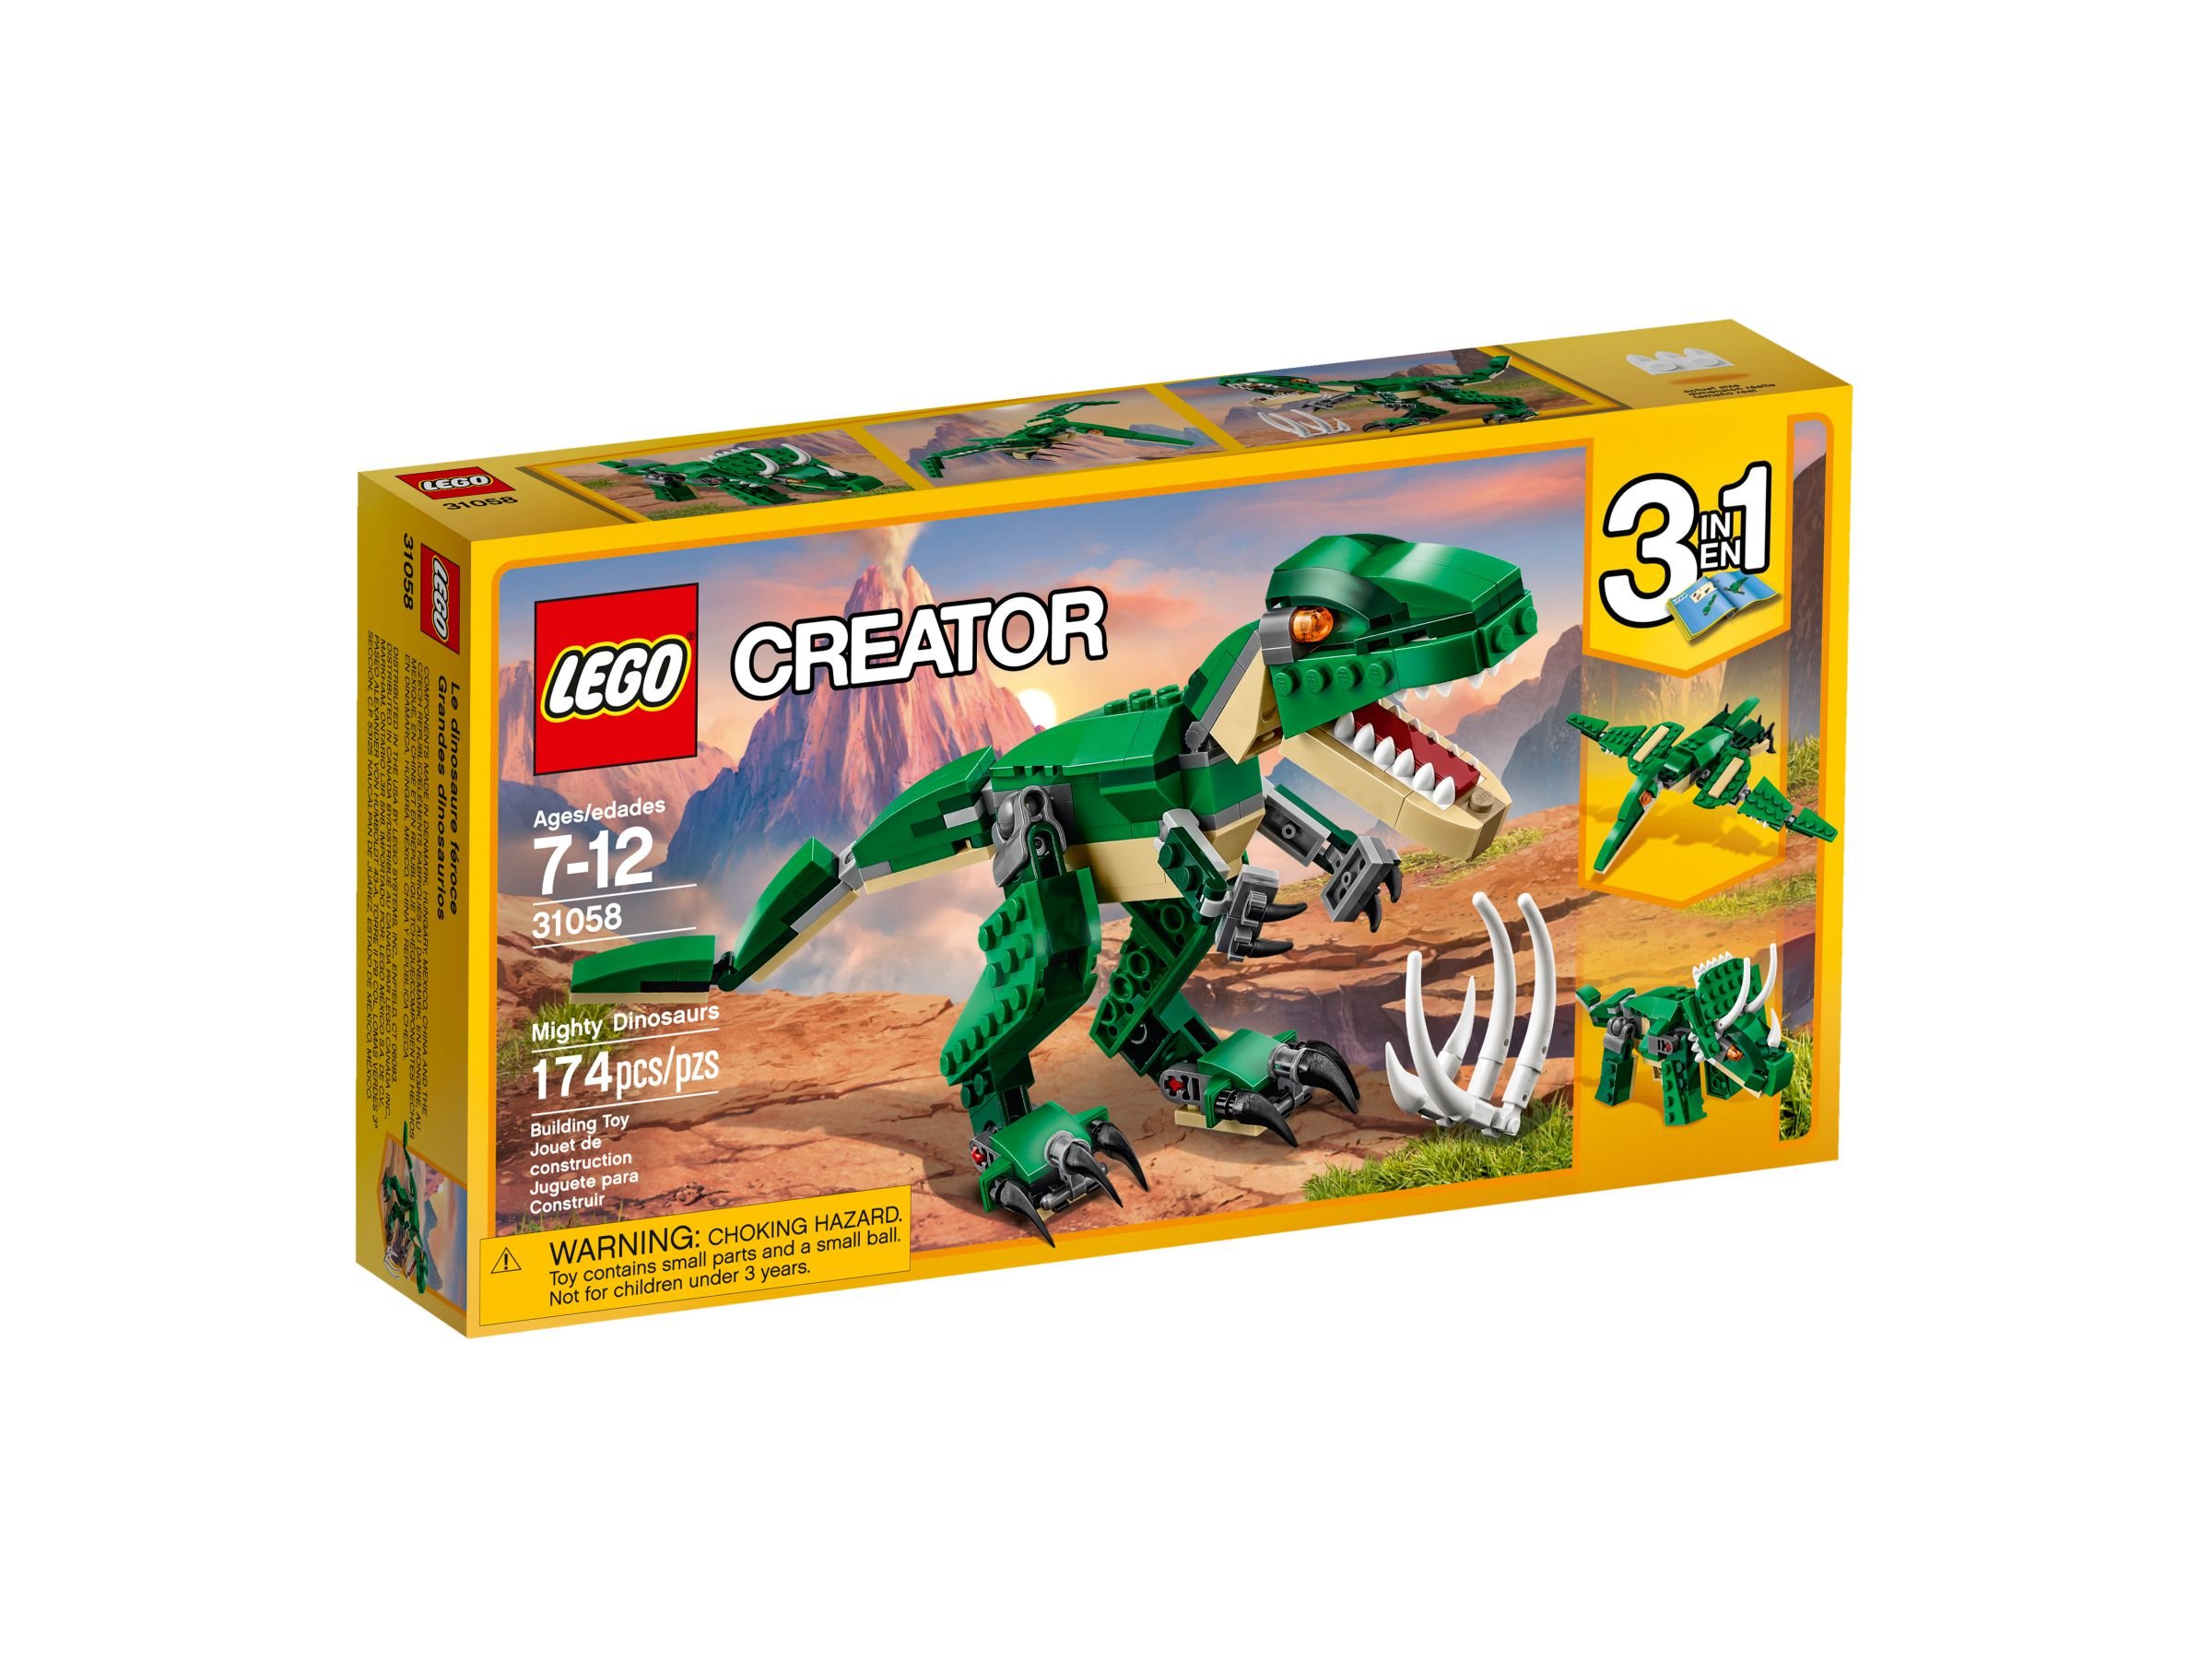 LEGO Creator 31058 Dinosaurier LEGO_31058_alt1.jpg